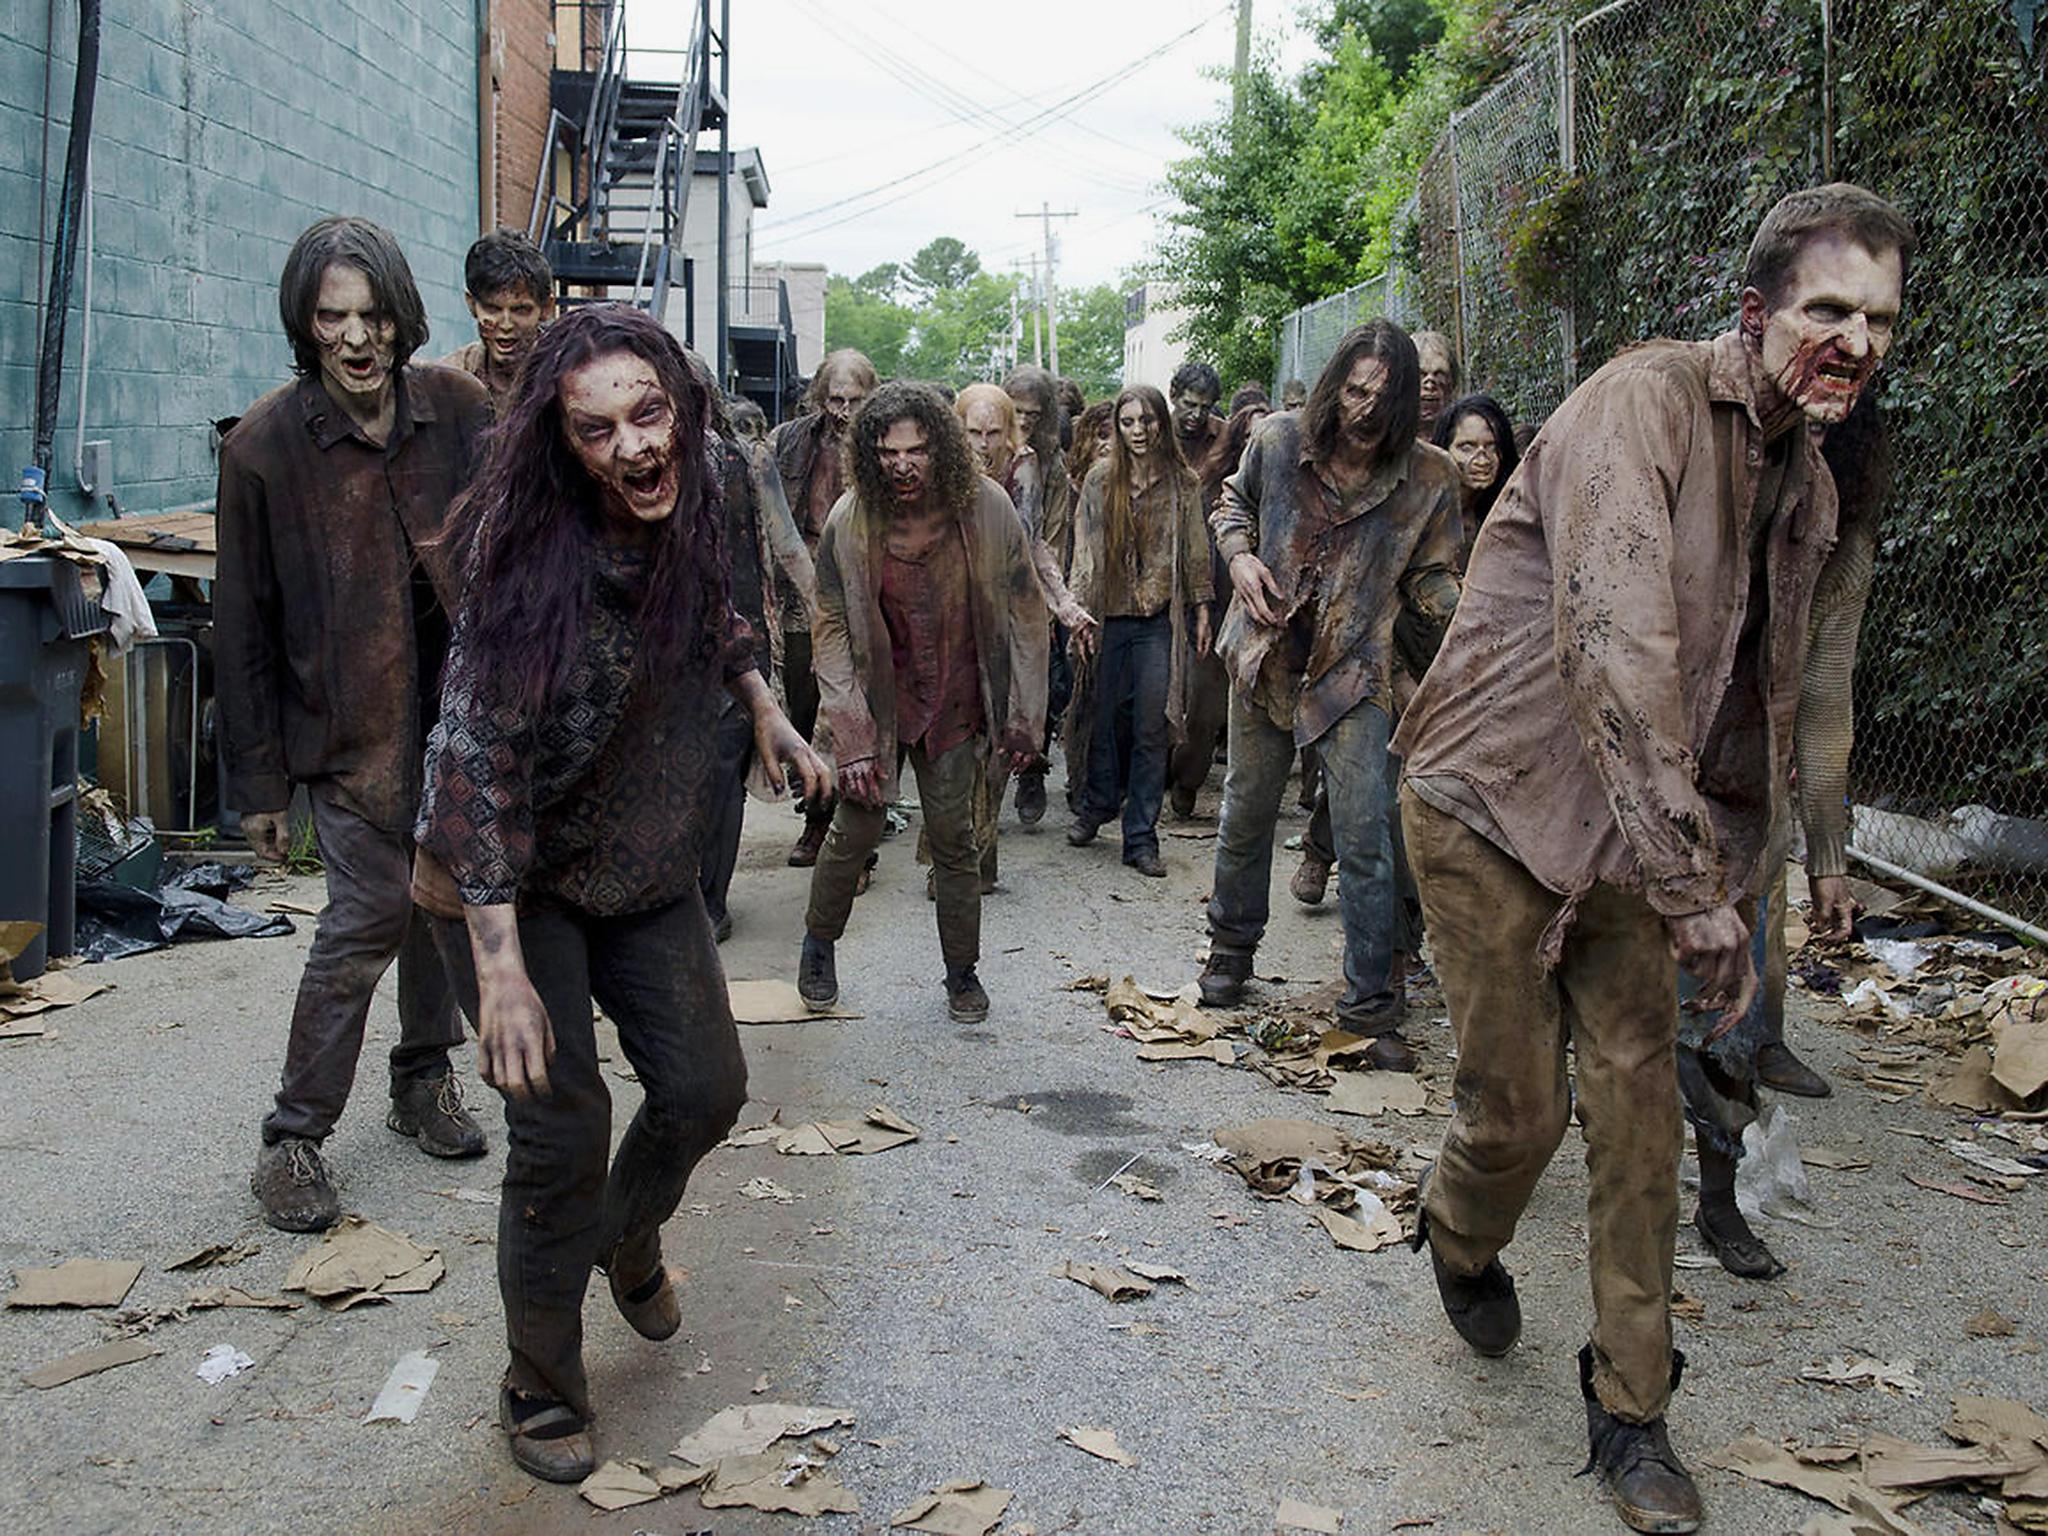 ‘The Walking Dead’ keeps on walking into its seventh season